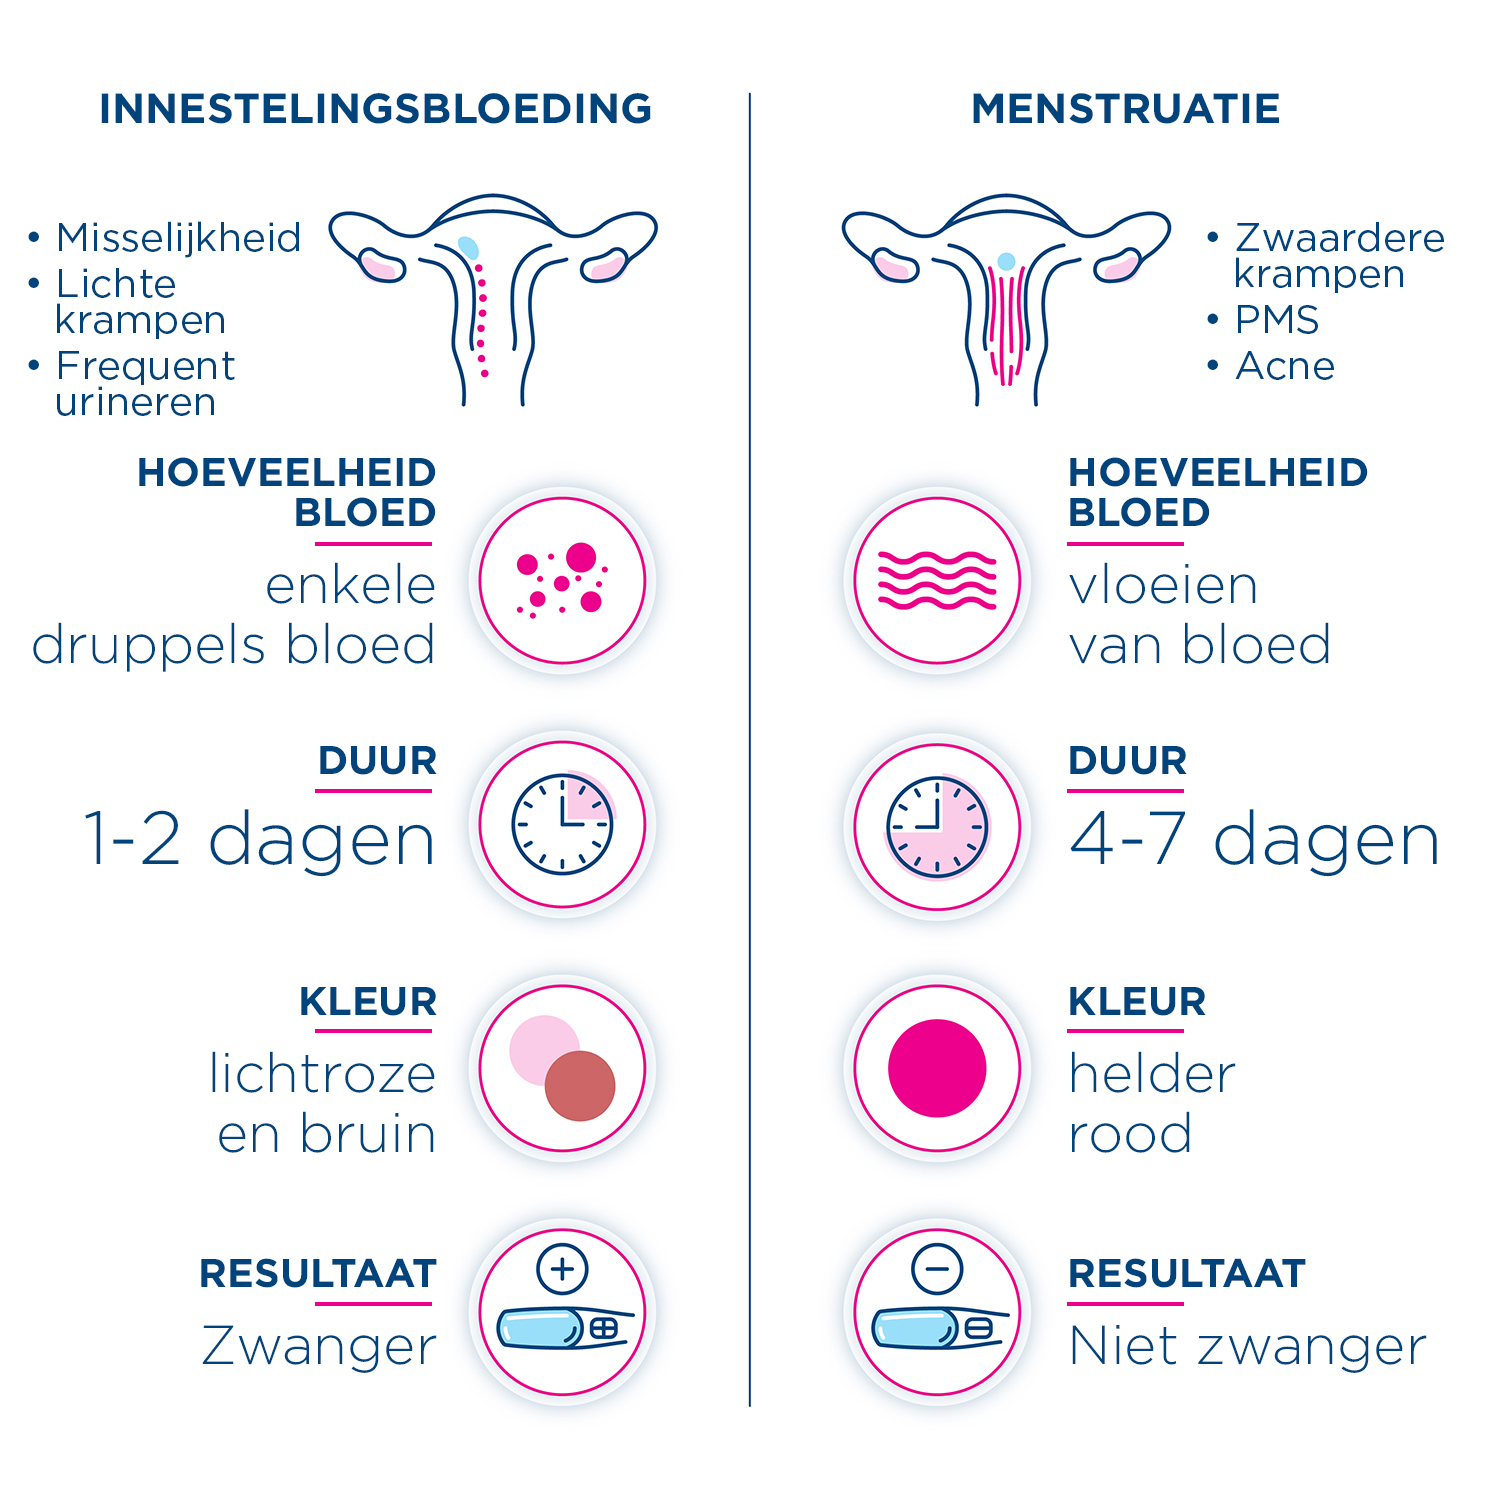 Infographic van de tekenen en symptomen om het verschil te zien tussen een innestelingsbloeding en je menstruatie